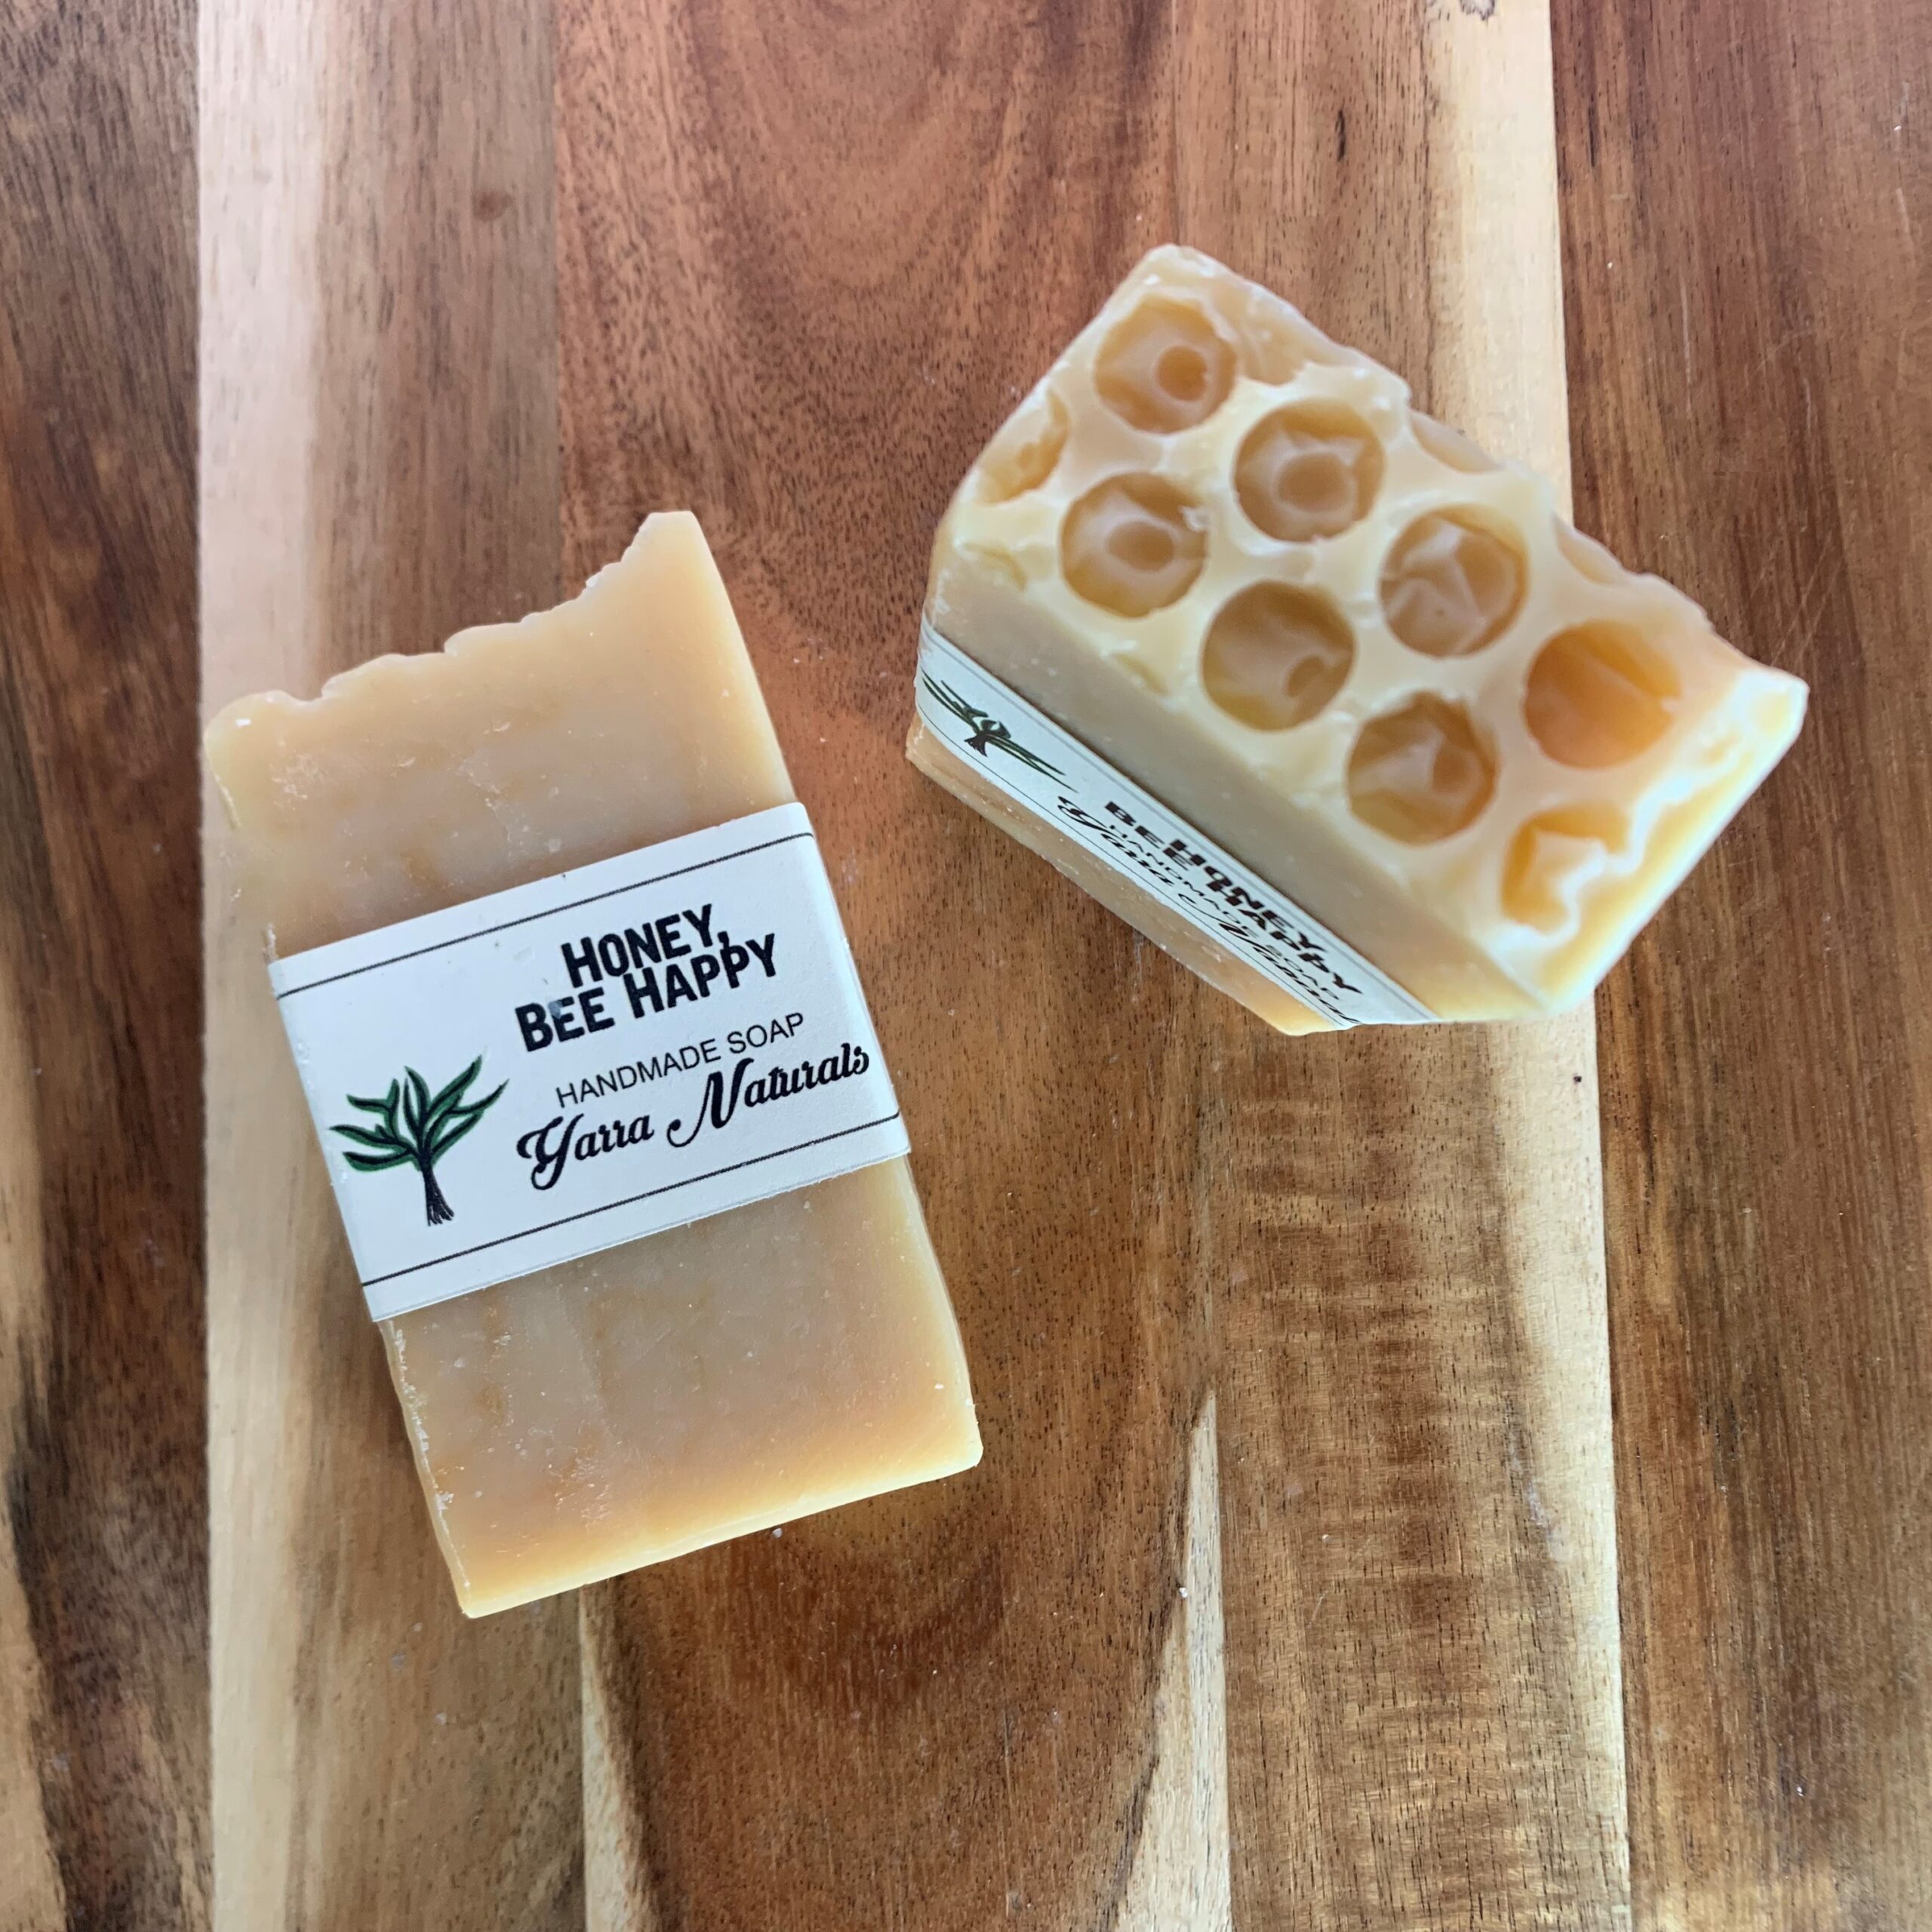 Honey, Bee Happy Body Soap